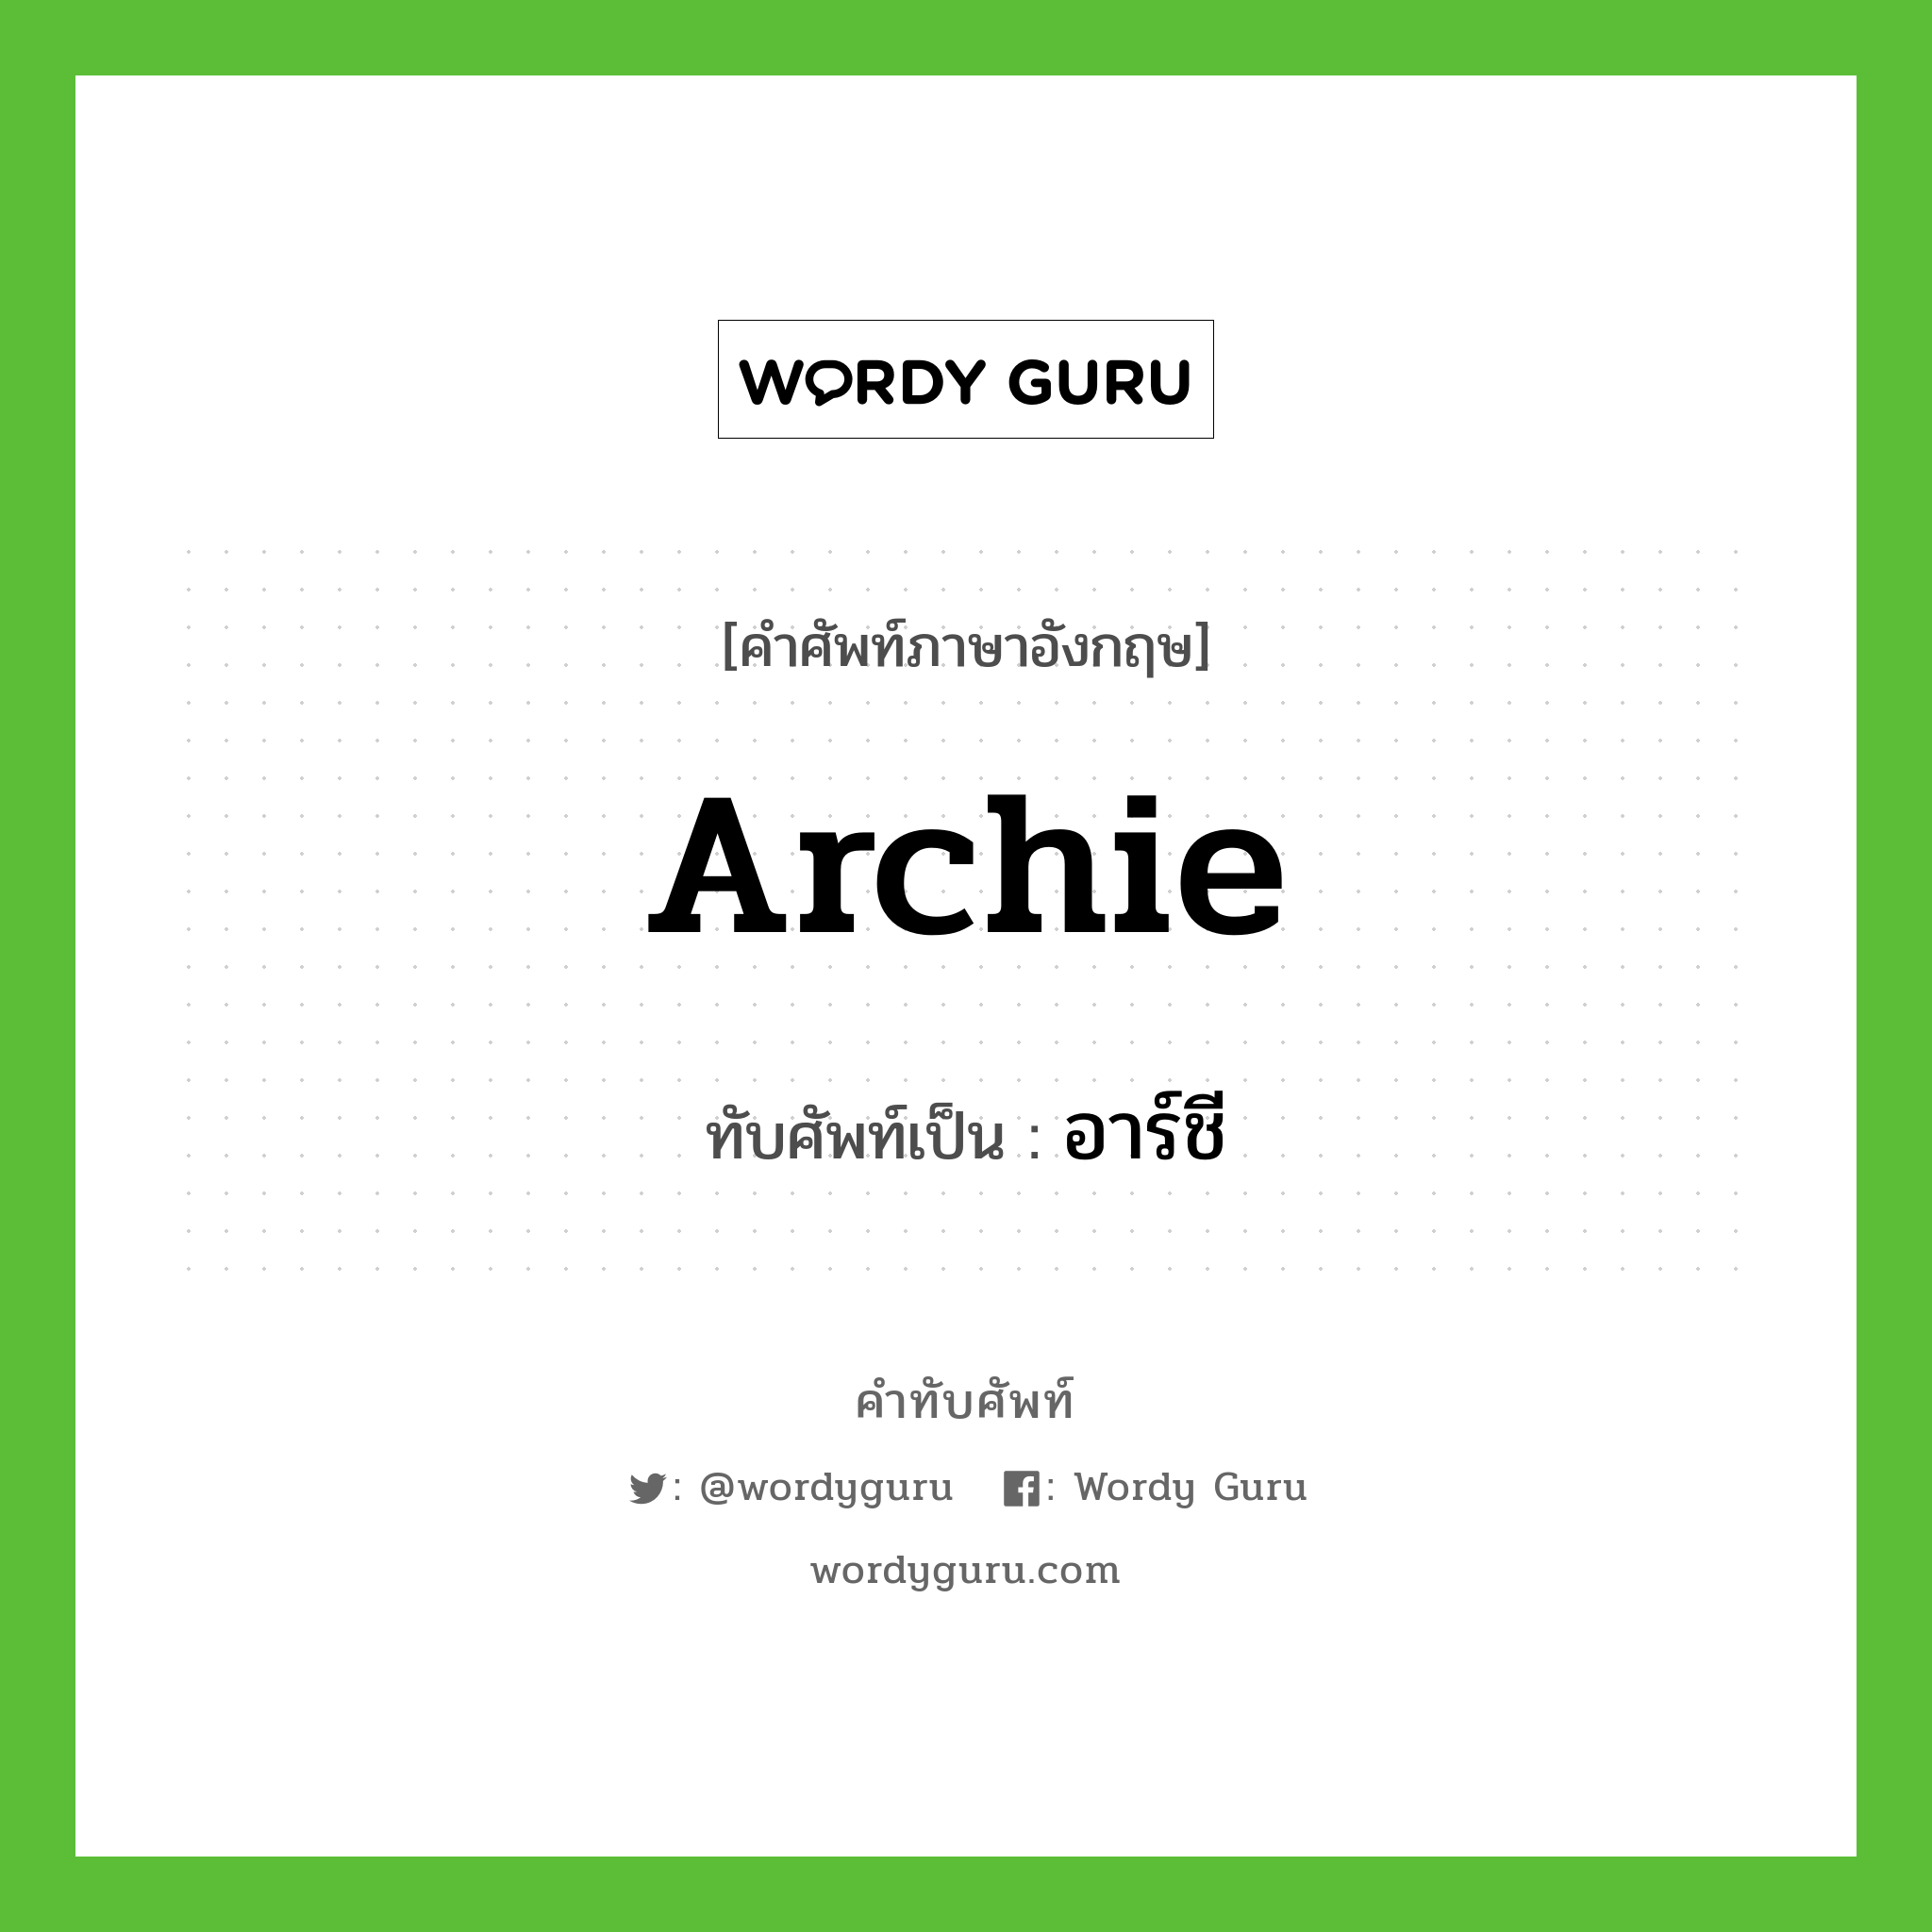 Archie เขียนเป็นคำไทยว่าอะไร?, คำศัพท์ภาษาอังกฤษ Archie ทับศัพท์เป็น อาร์ชี